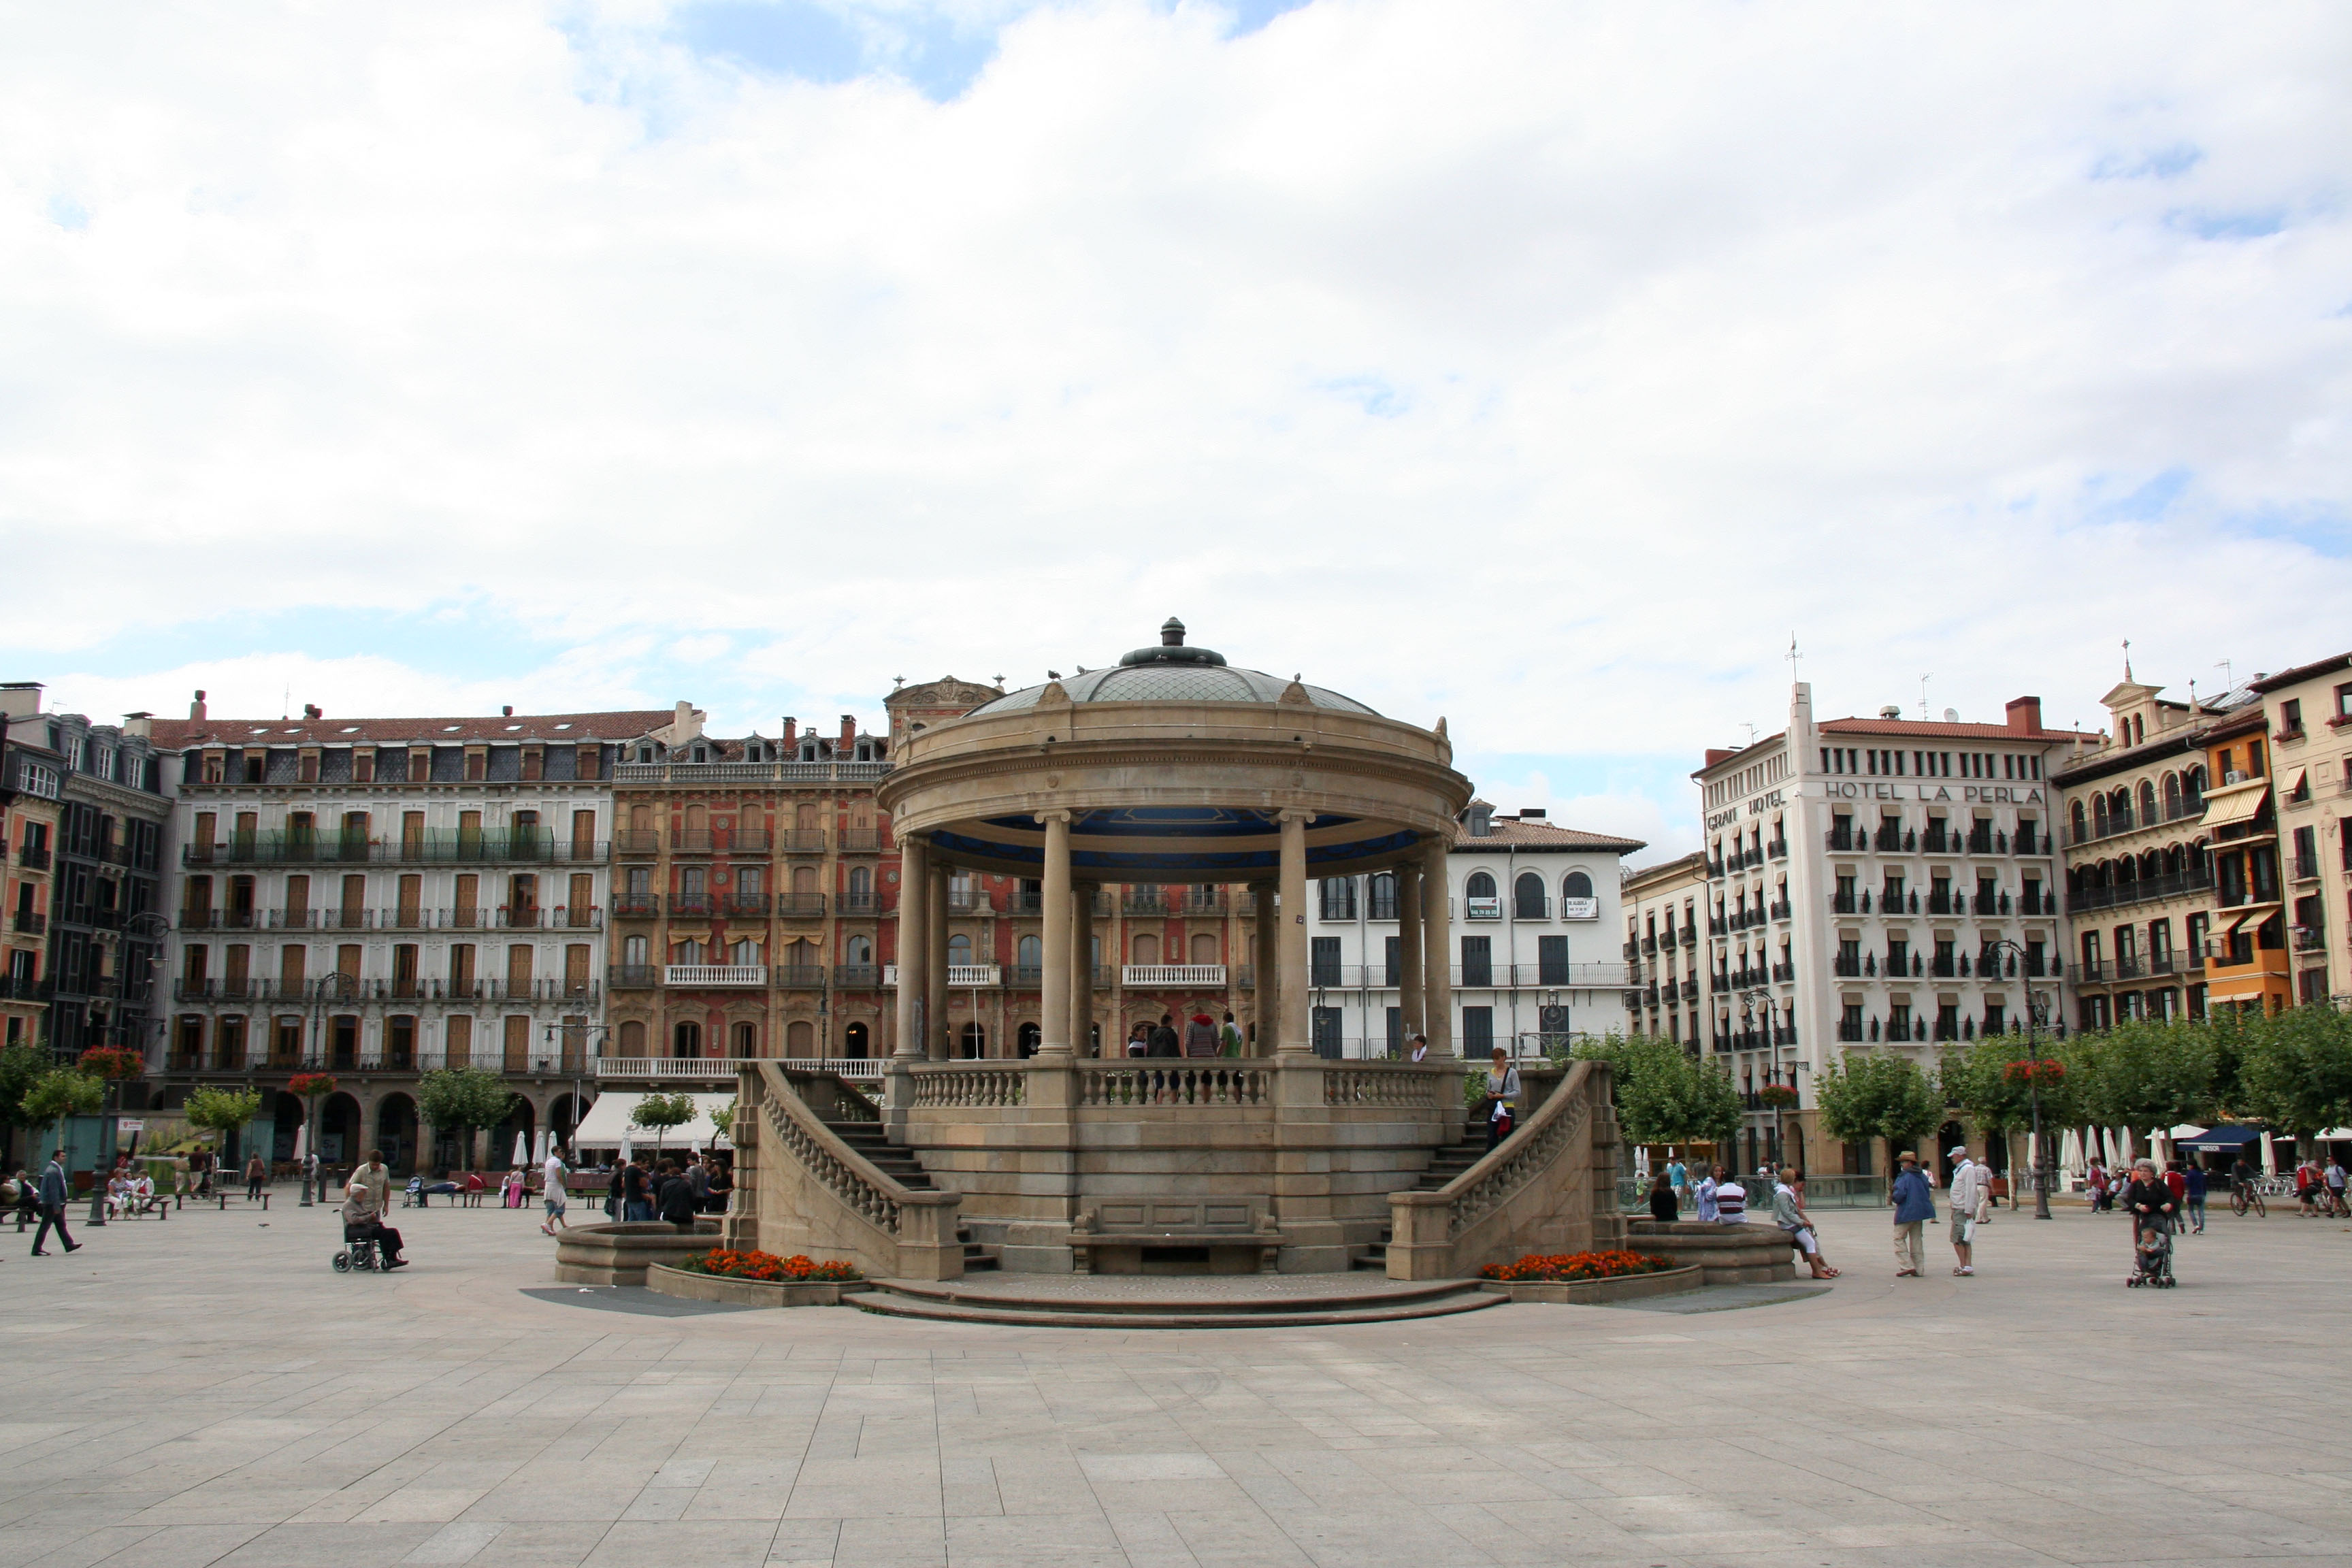 Tener un picnic agujas del reloj Aparador Plaza del Castillo, Pamplona, Navarra, Spain | GibSpain